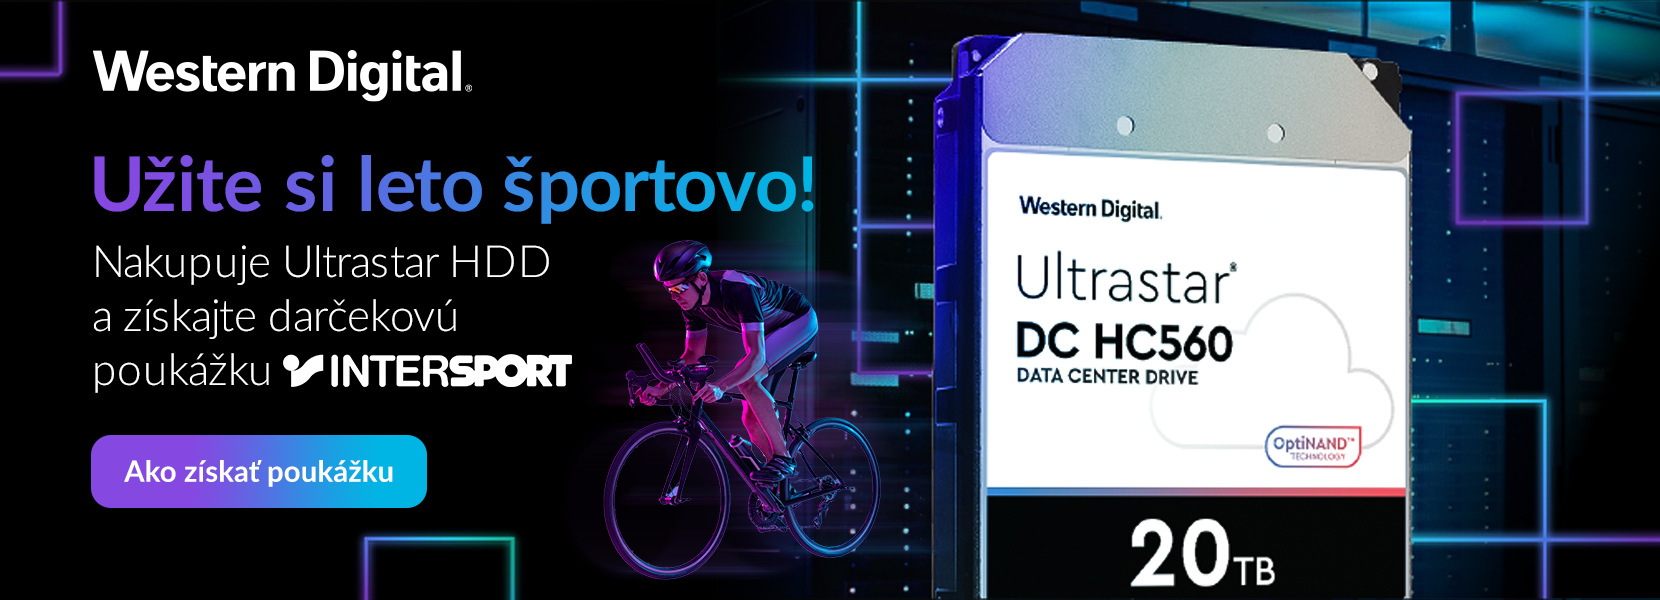 Intersport poukážka k nákupu WD Ultrastar HDD